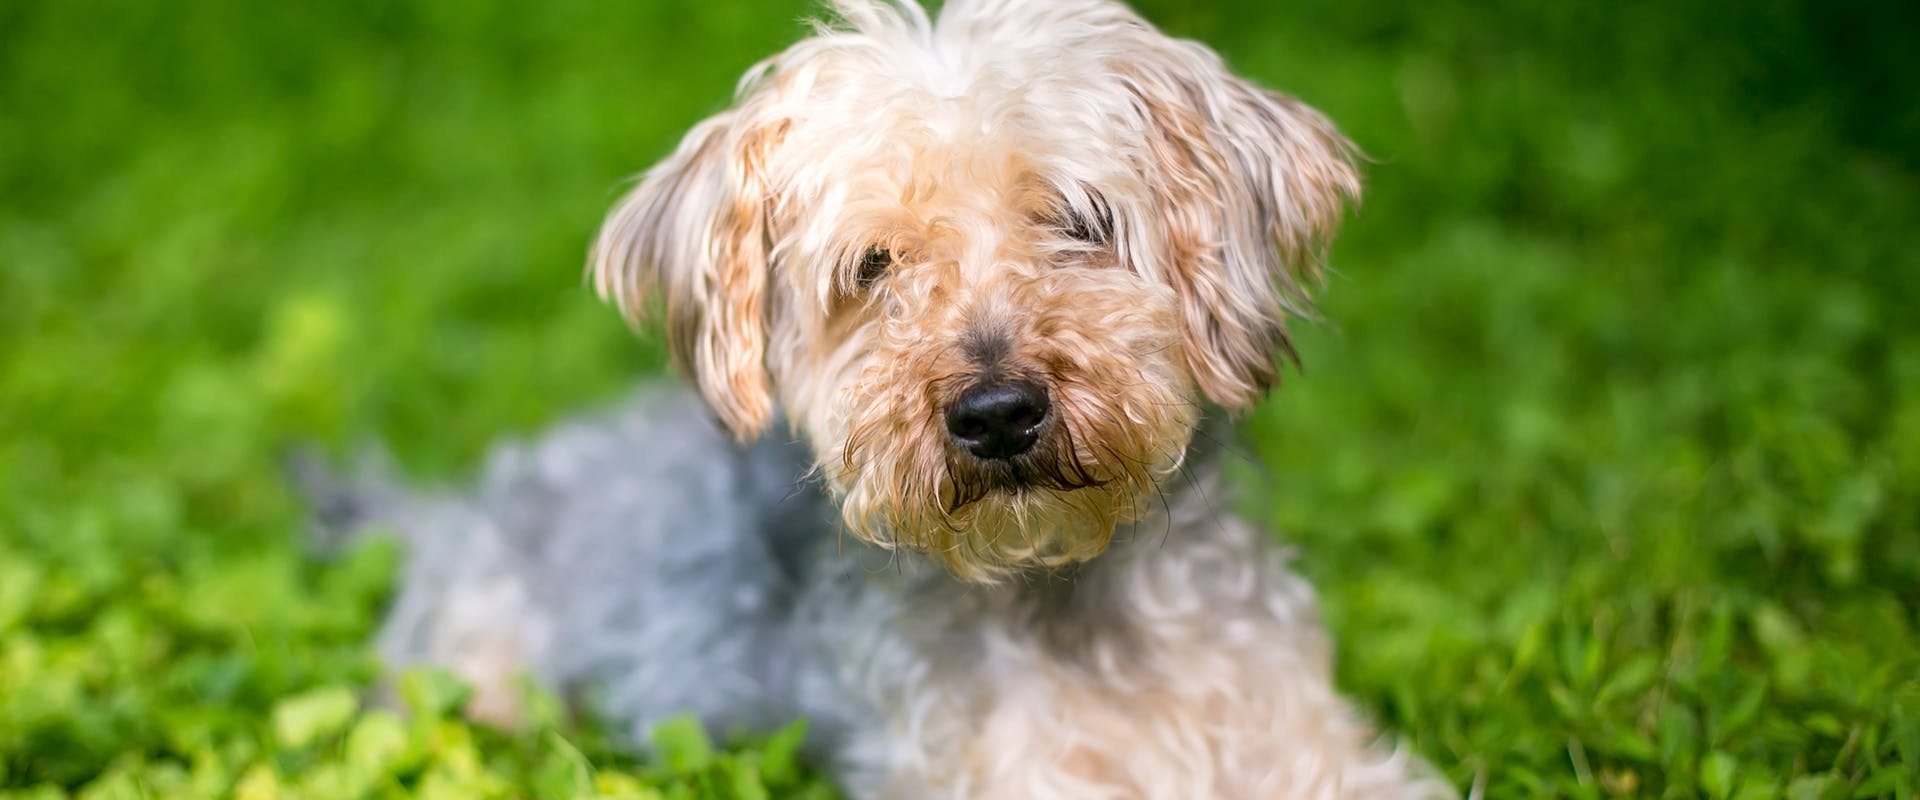 A beige Yorkiepoo puppy sitting on green grass